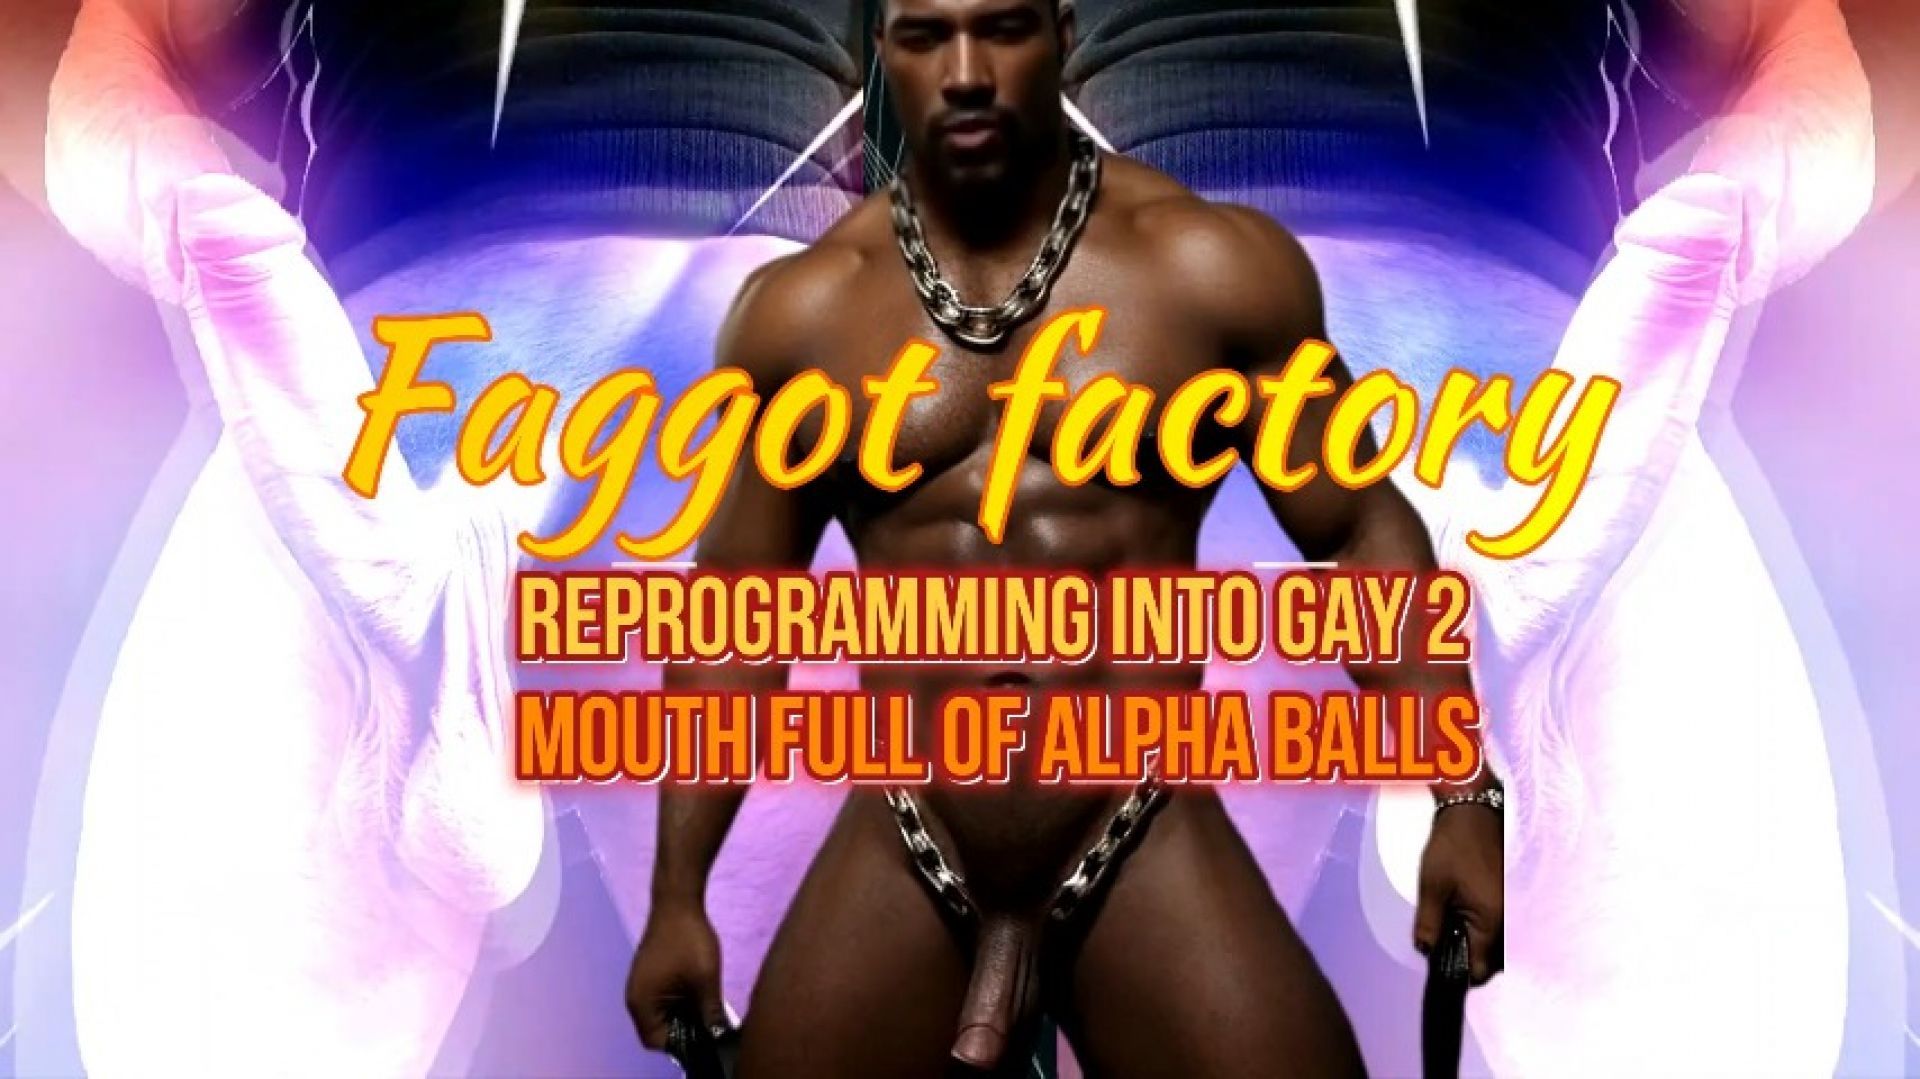 Faggot factory - reprogramming into gay 2 Mouth Full of